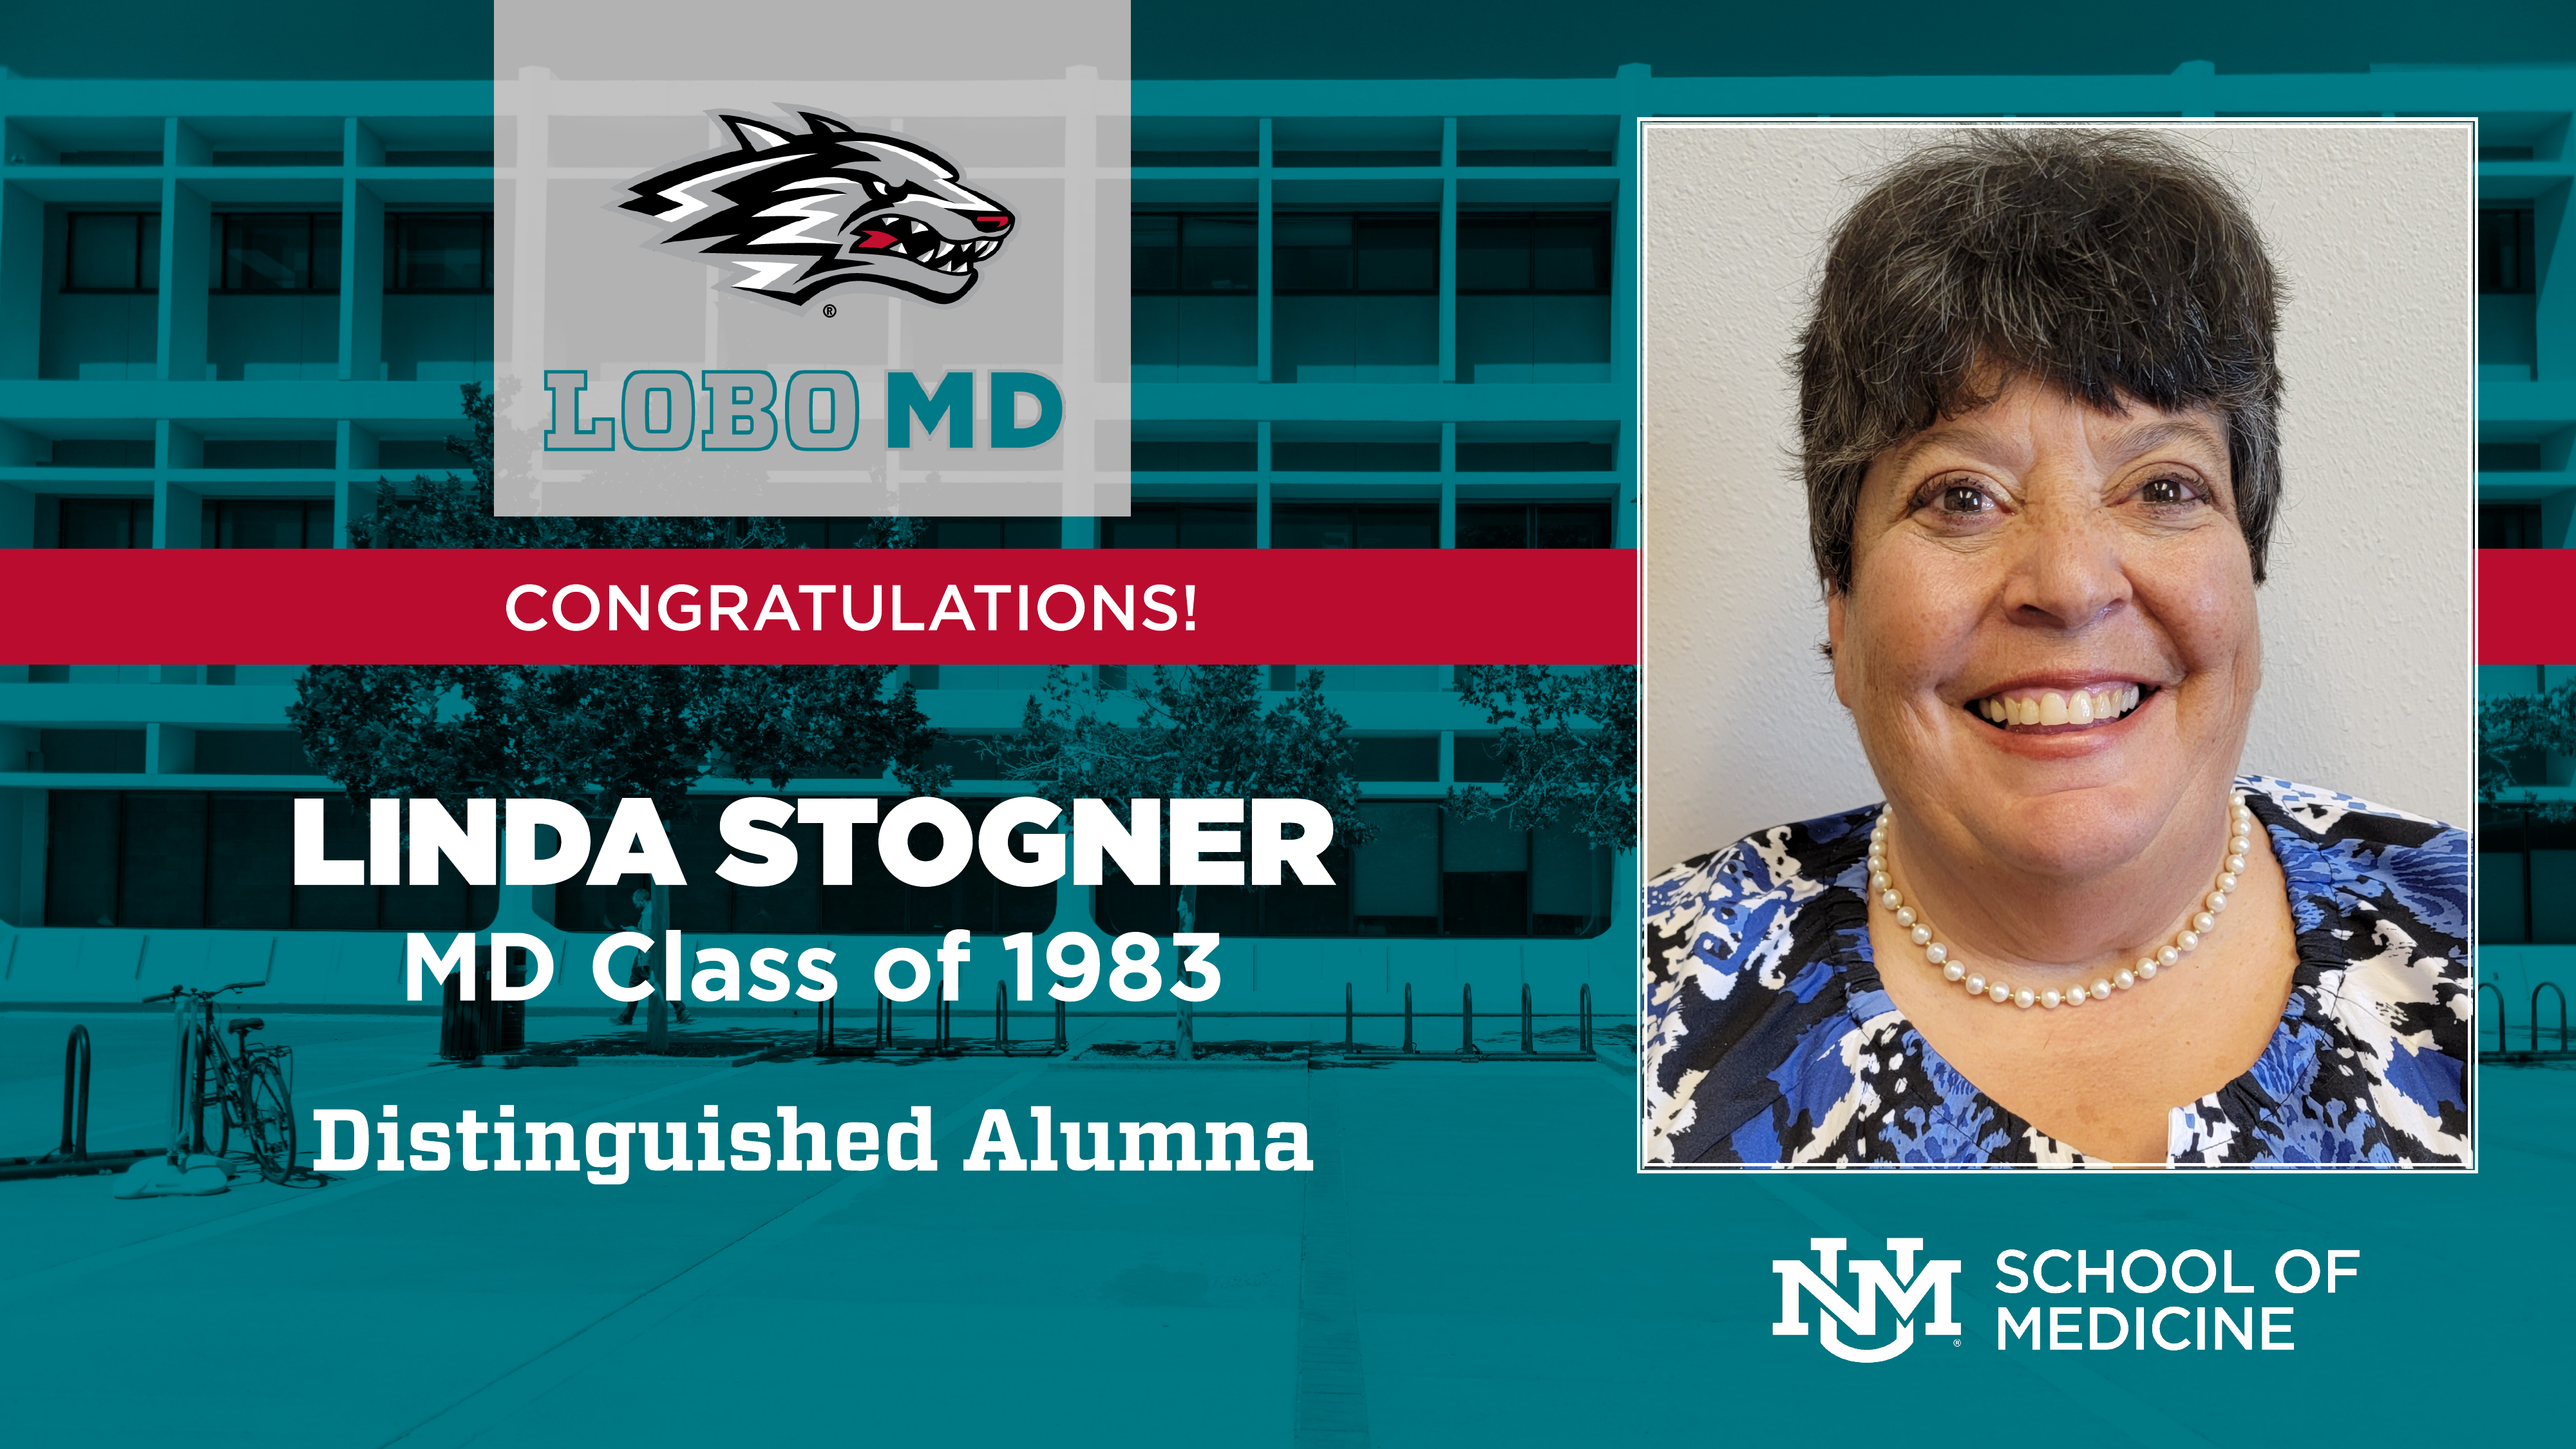 Dr. Linda Stogner